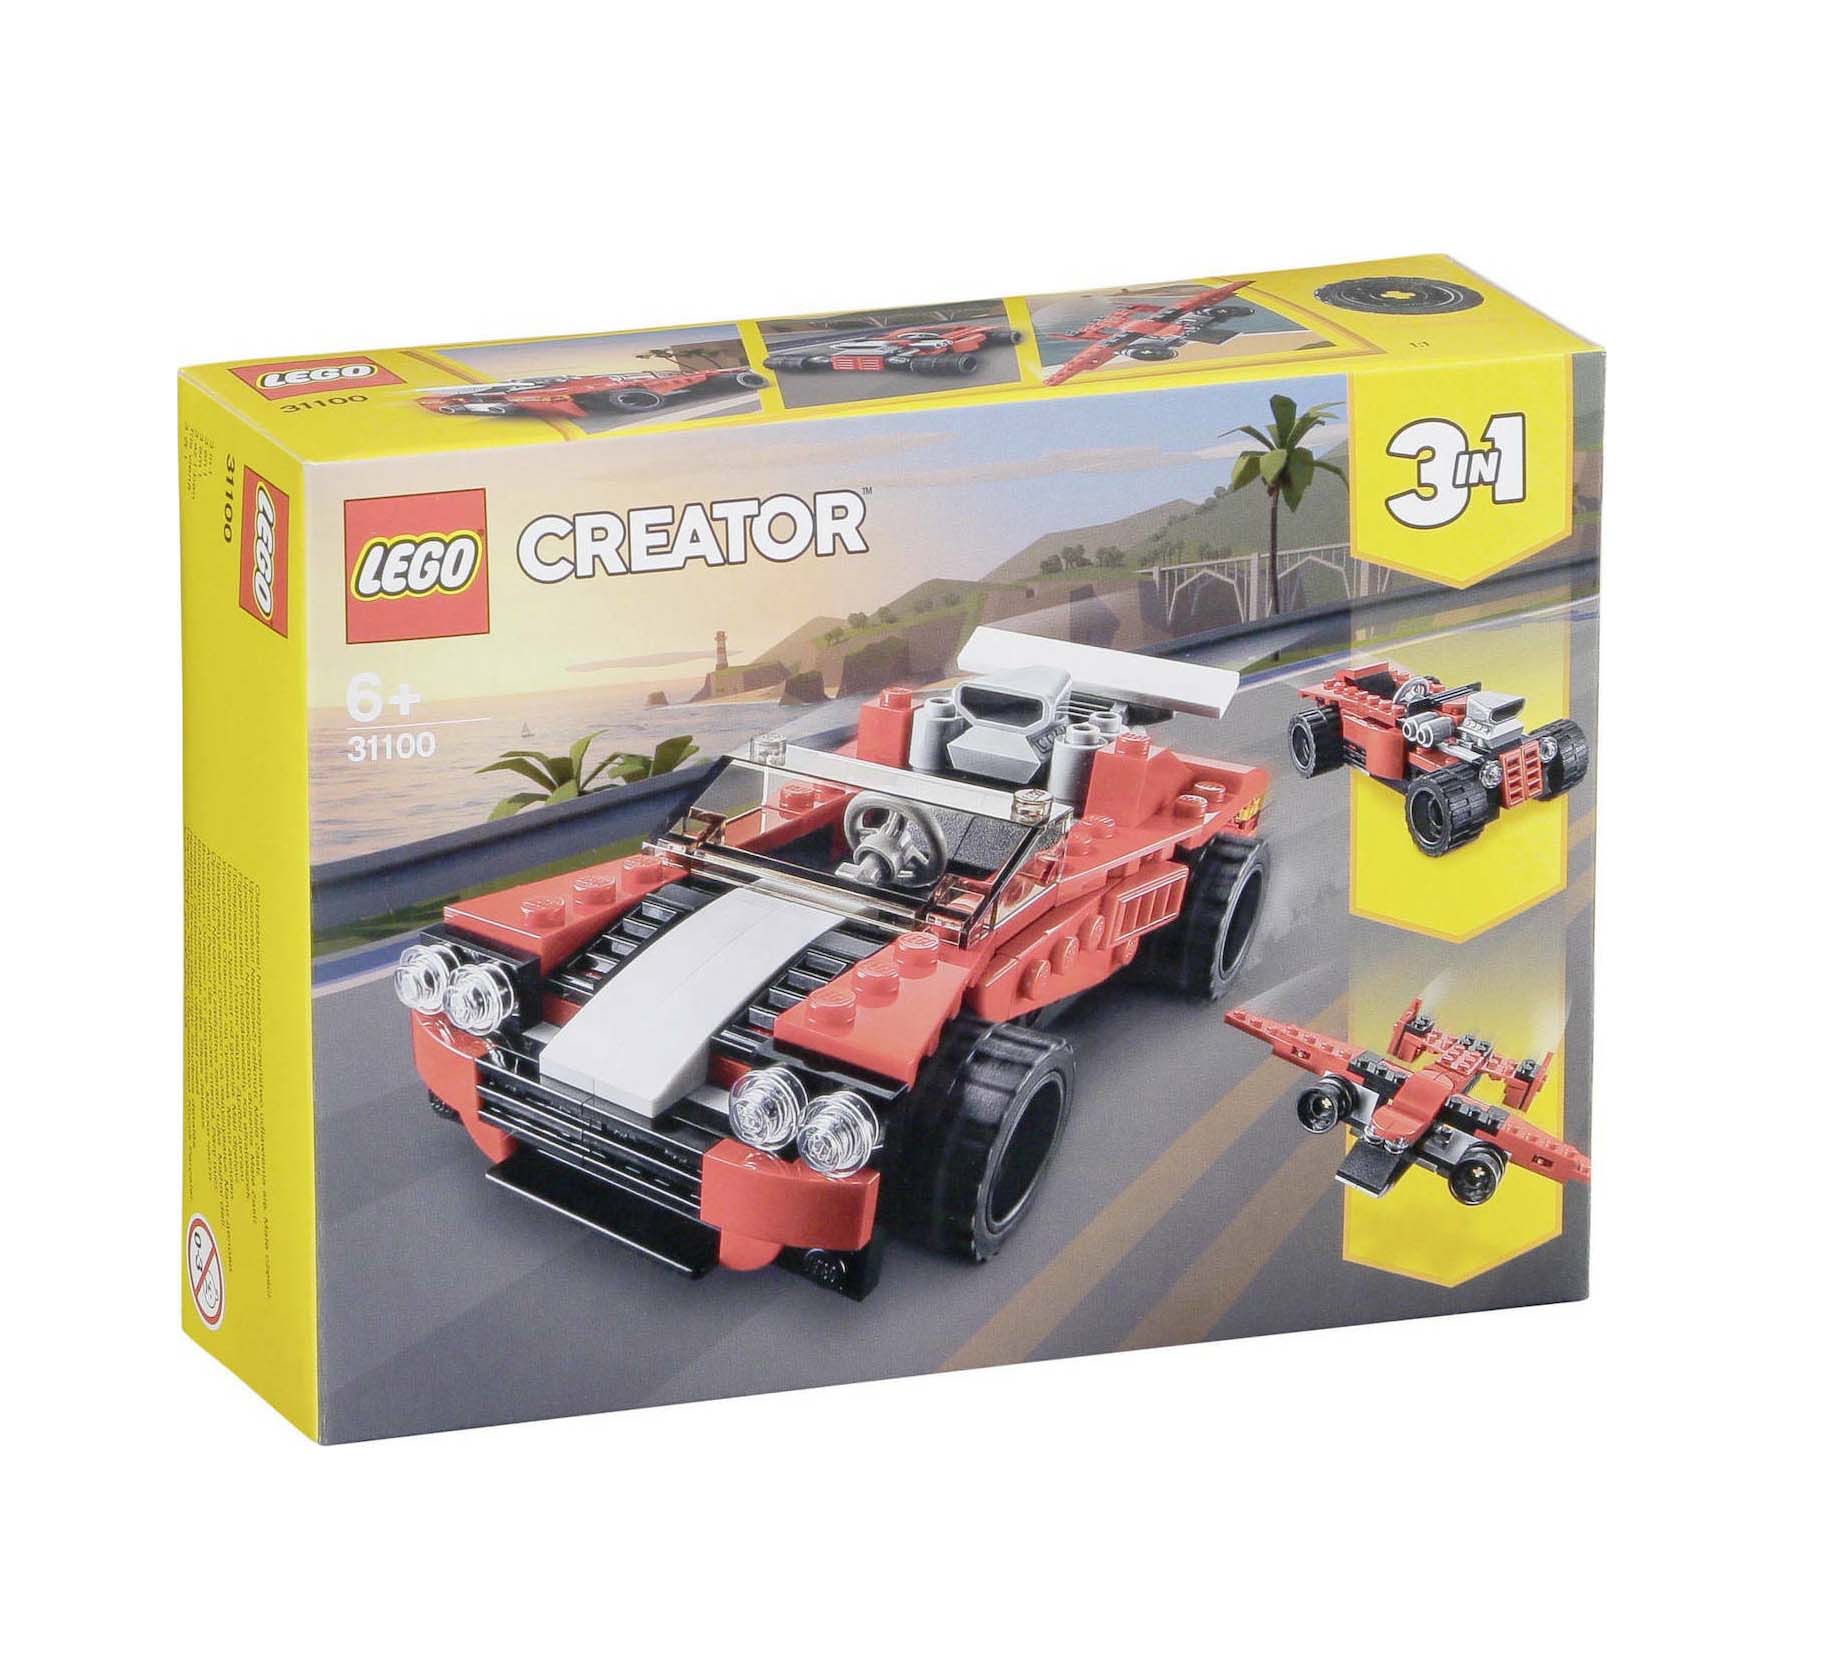 Lego Creator 3-in-1: Sports Car 31100